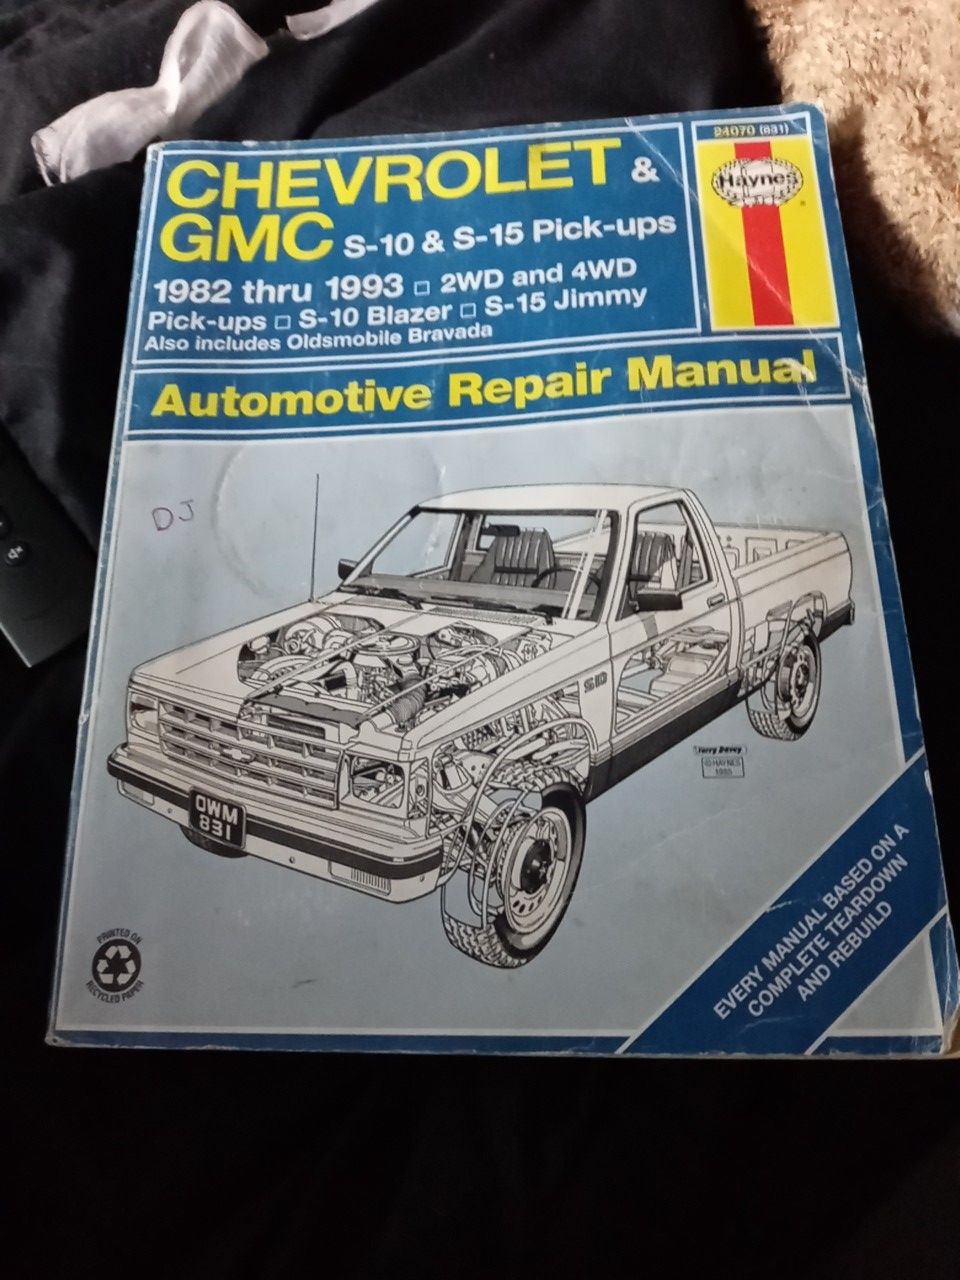 82-93 Chevrolet &GMC S10 S15 pick ups repair manual